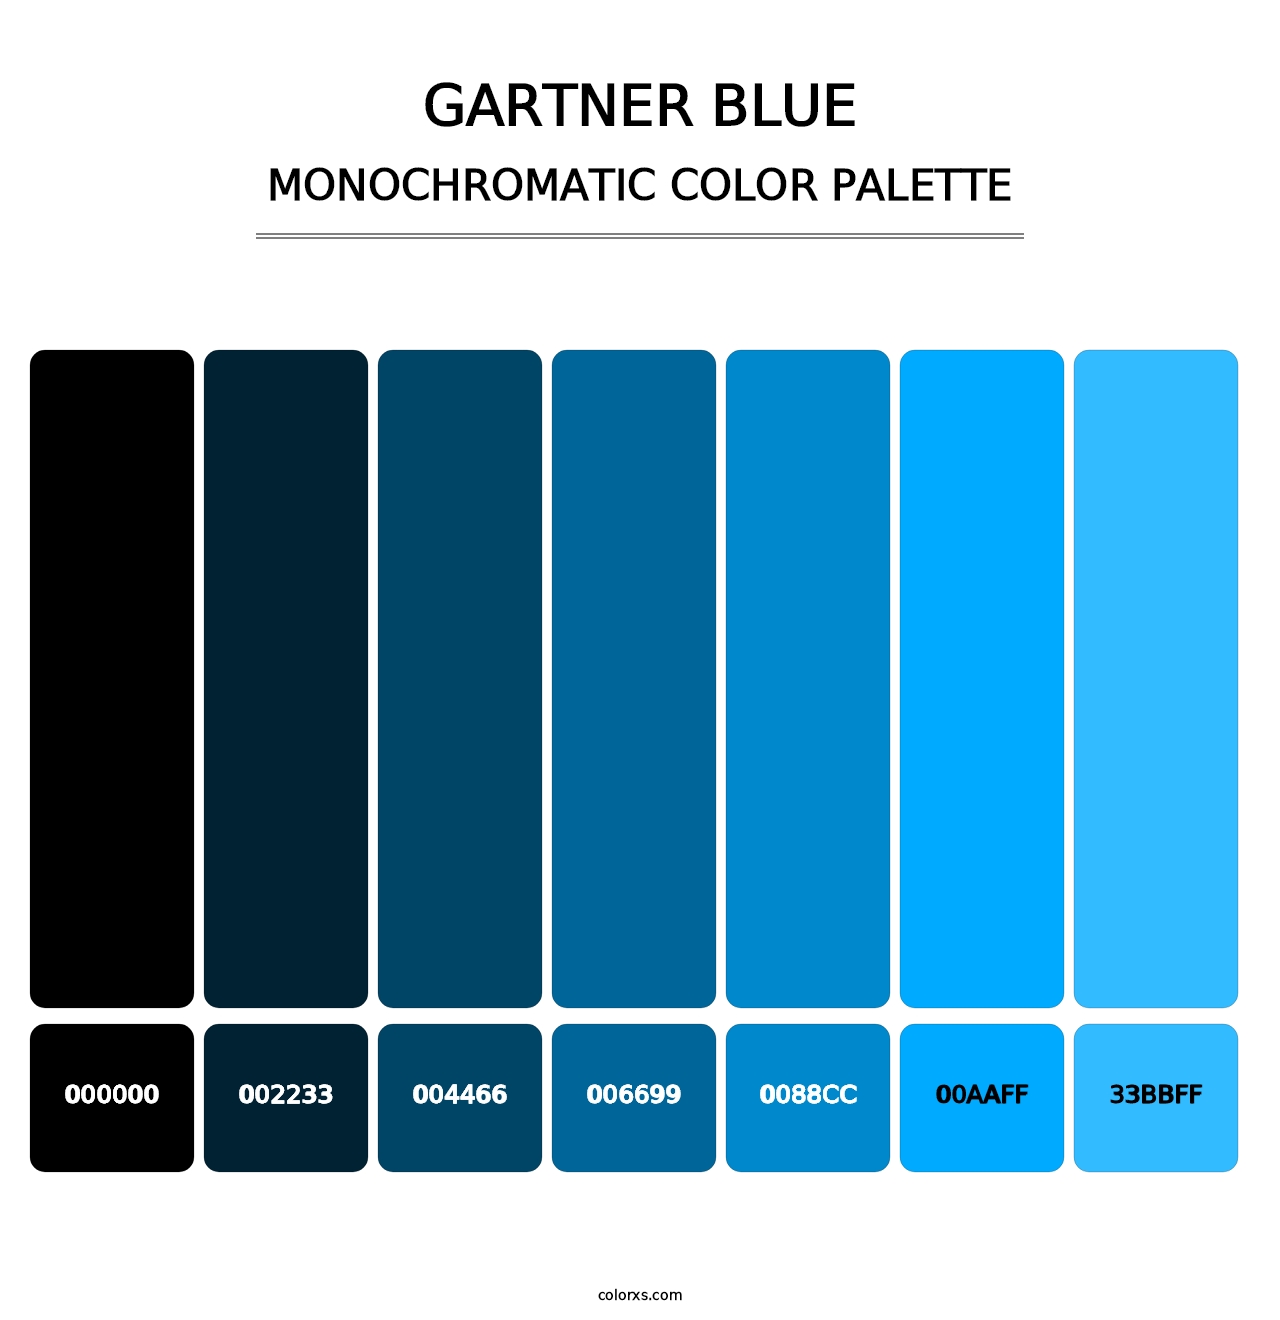 Gartner Blue - Monochromatic Color Palette